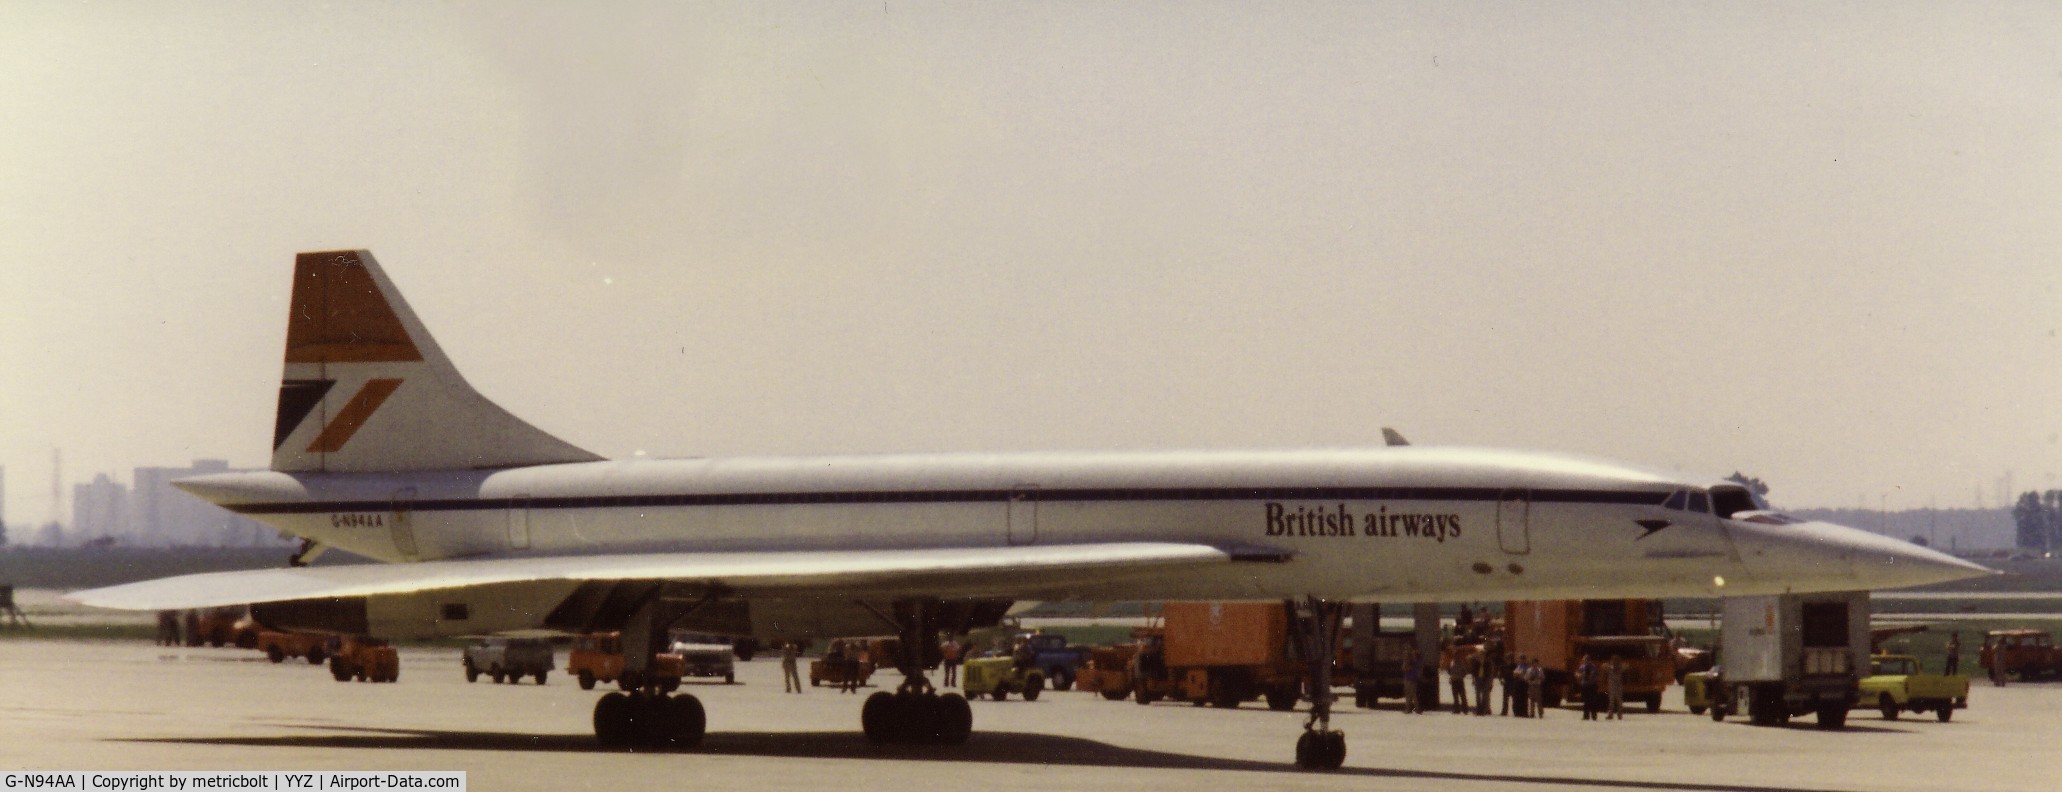 G-N94AA, 1974 Aerospatiale-BAC Concorde 1-102 C/N 100-006, Re-registered as G-BOAA 1980